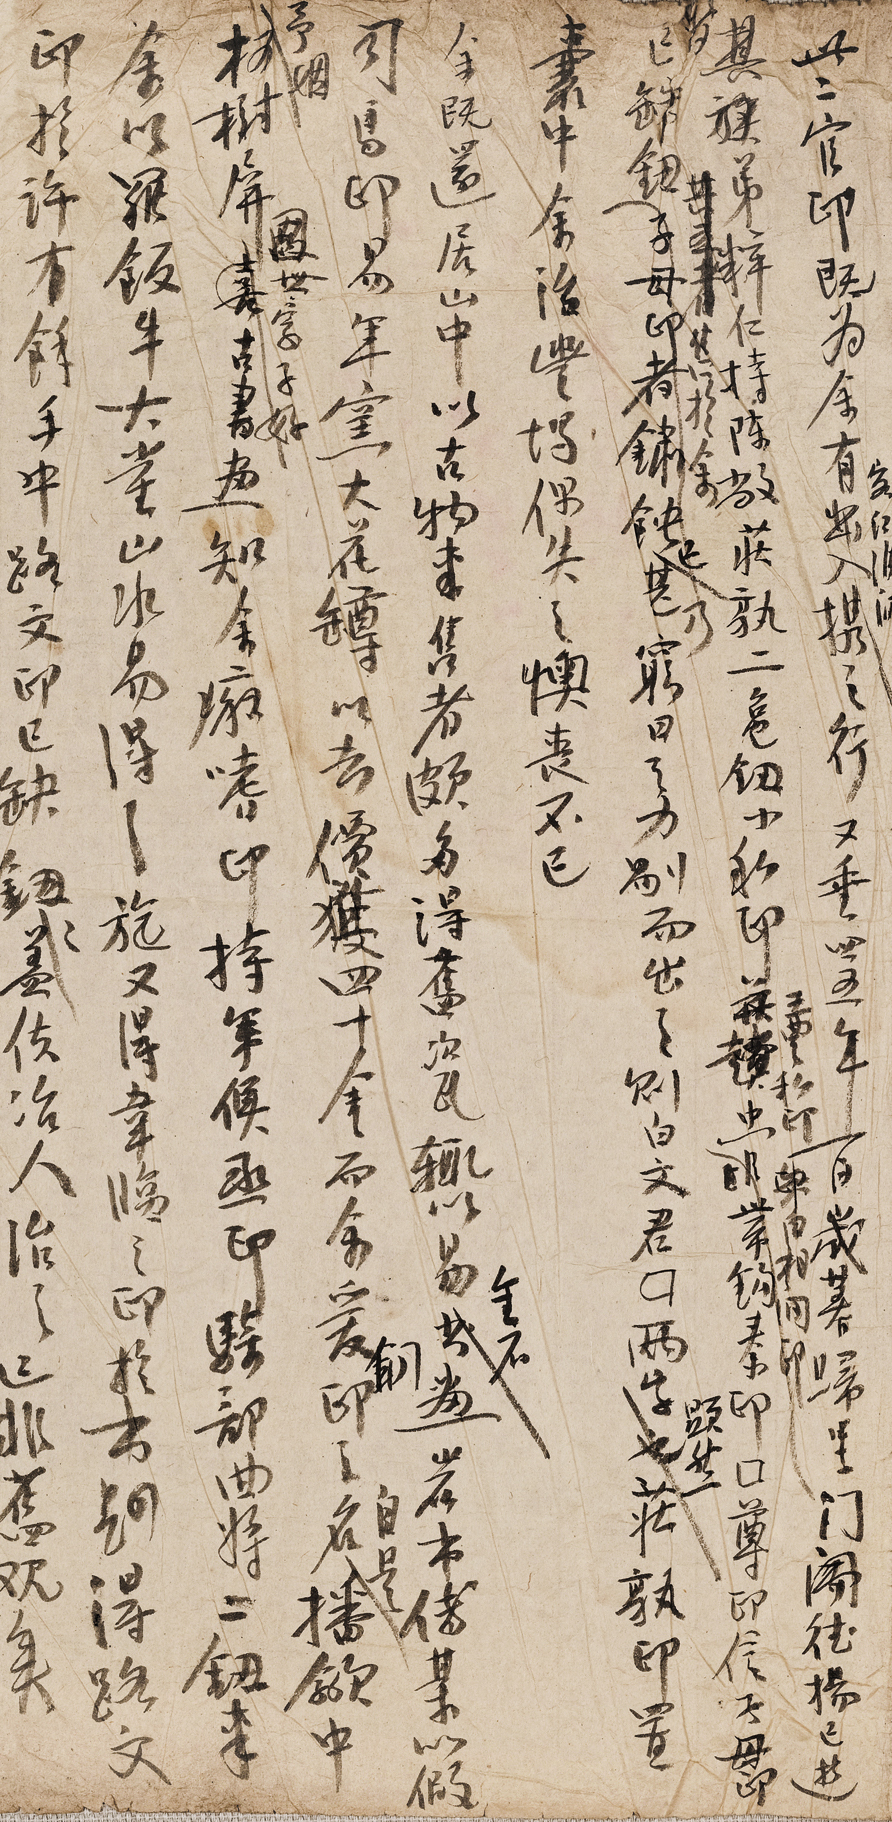 Manuscript of "Bronze Seal of Tibetan and Han Dynasties"